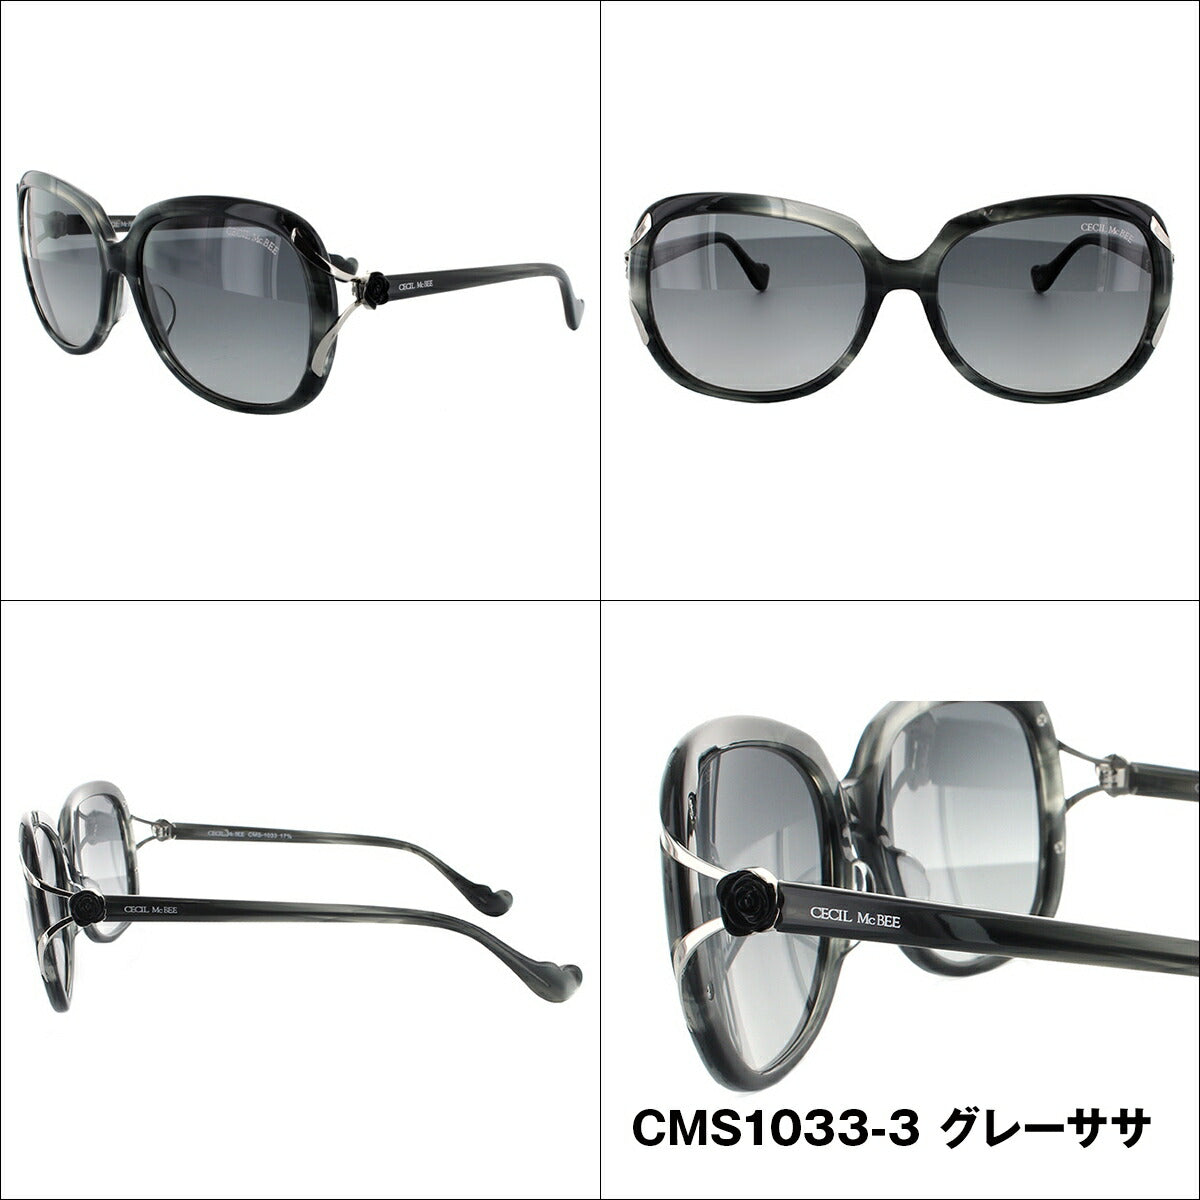 レディース サングラス CECIL McBEE セシルマクビー CMS 1033 全3色 58サイズ アジアンフィット 女性 UVカット 紫外線 対策 ブランド 眼鏡 メガネ アイウェア 人気 おすすめ ラッピング無料